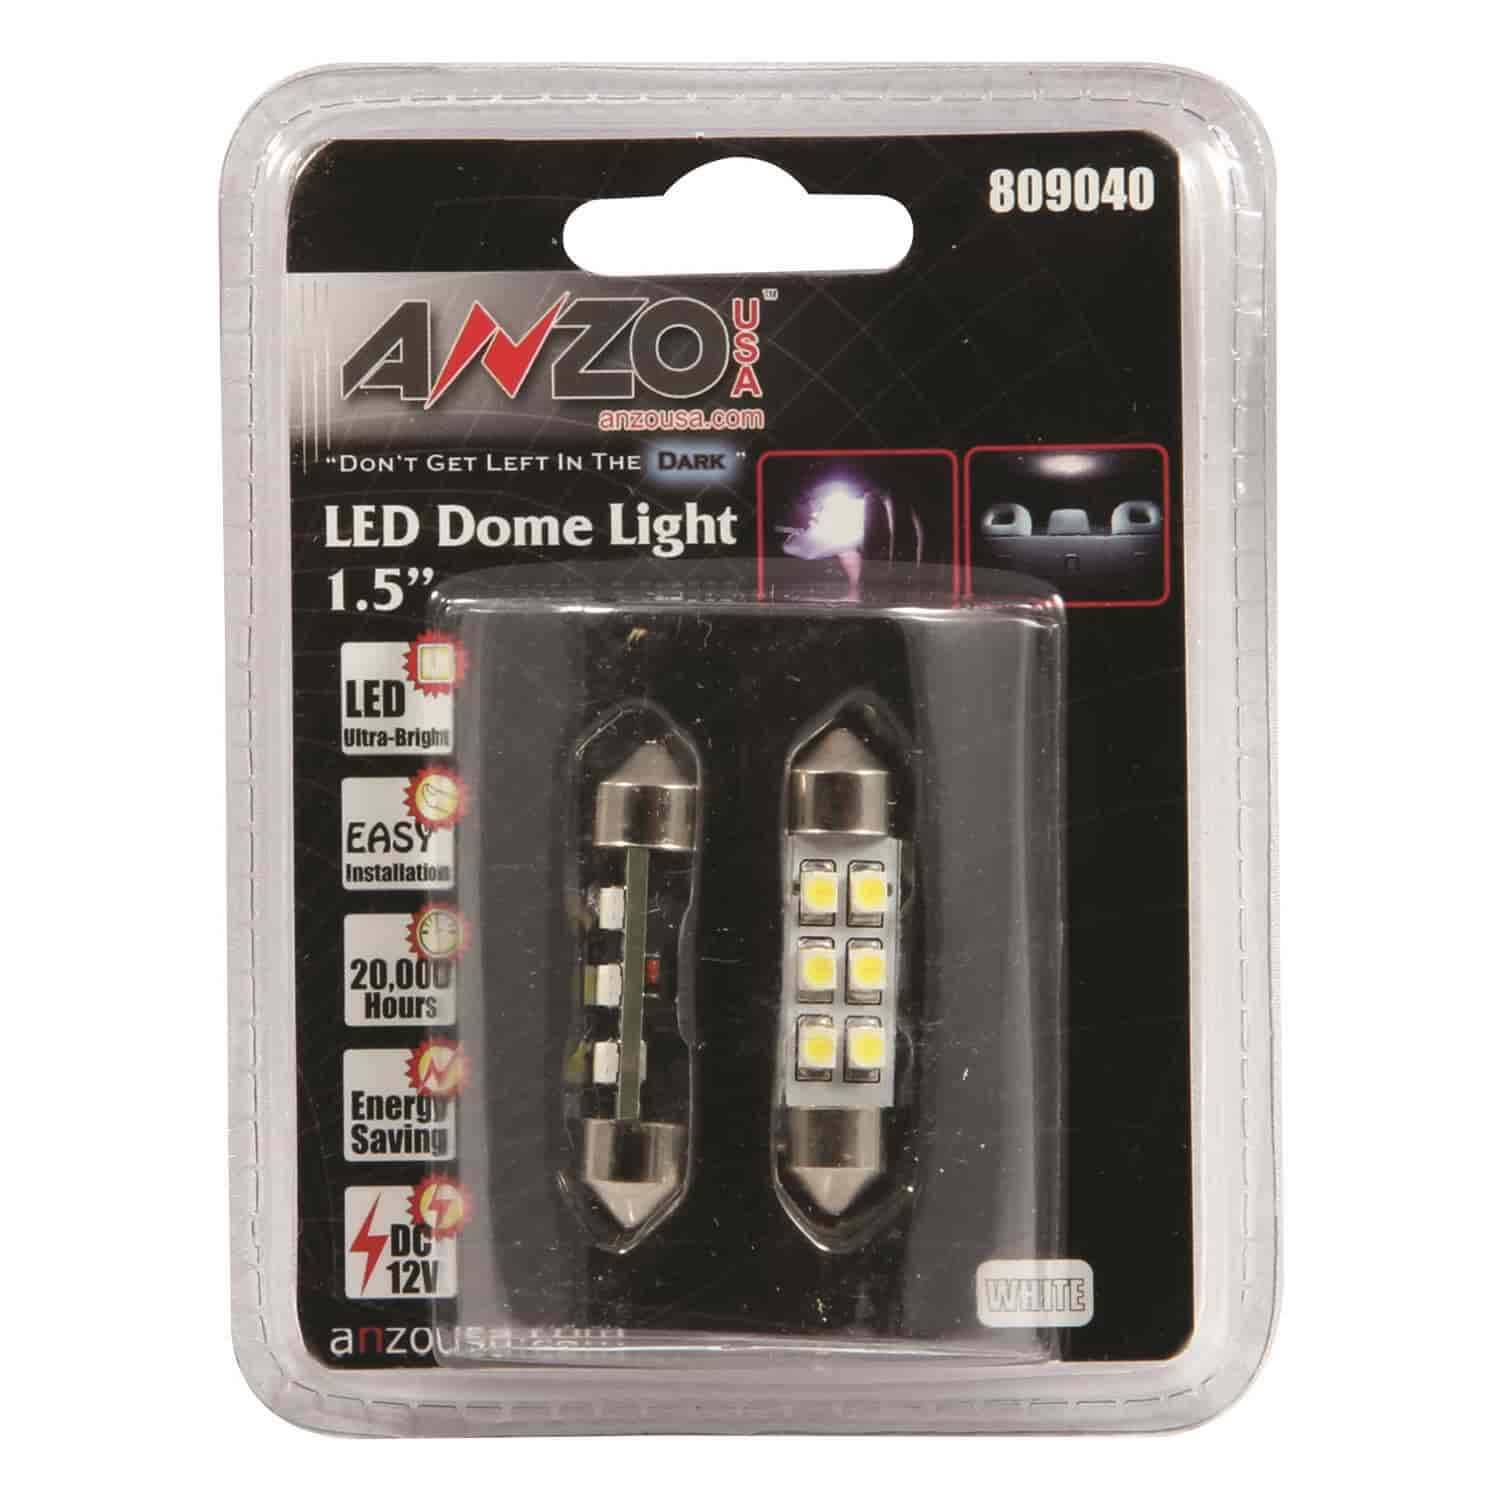 Dome LED Light Bulb 1.5"